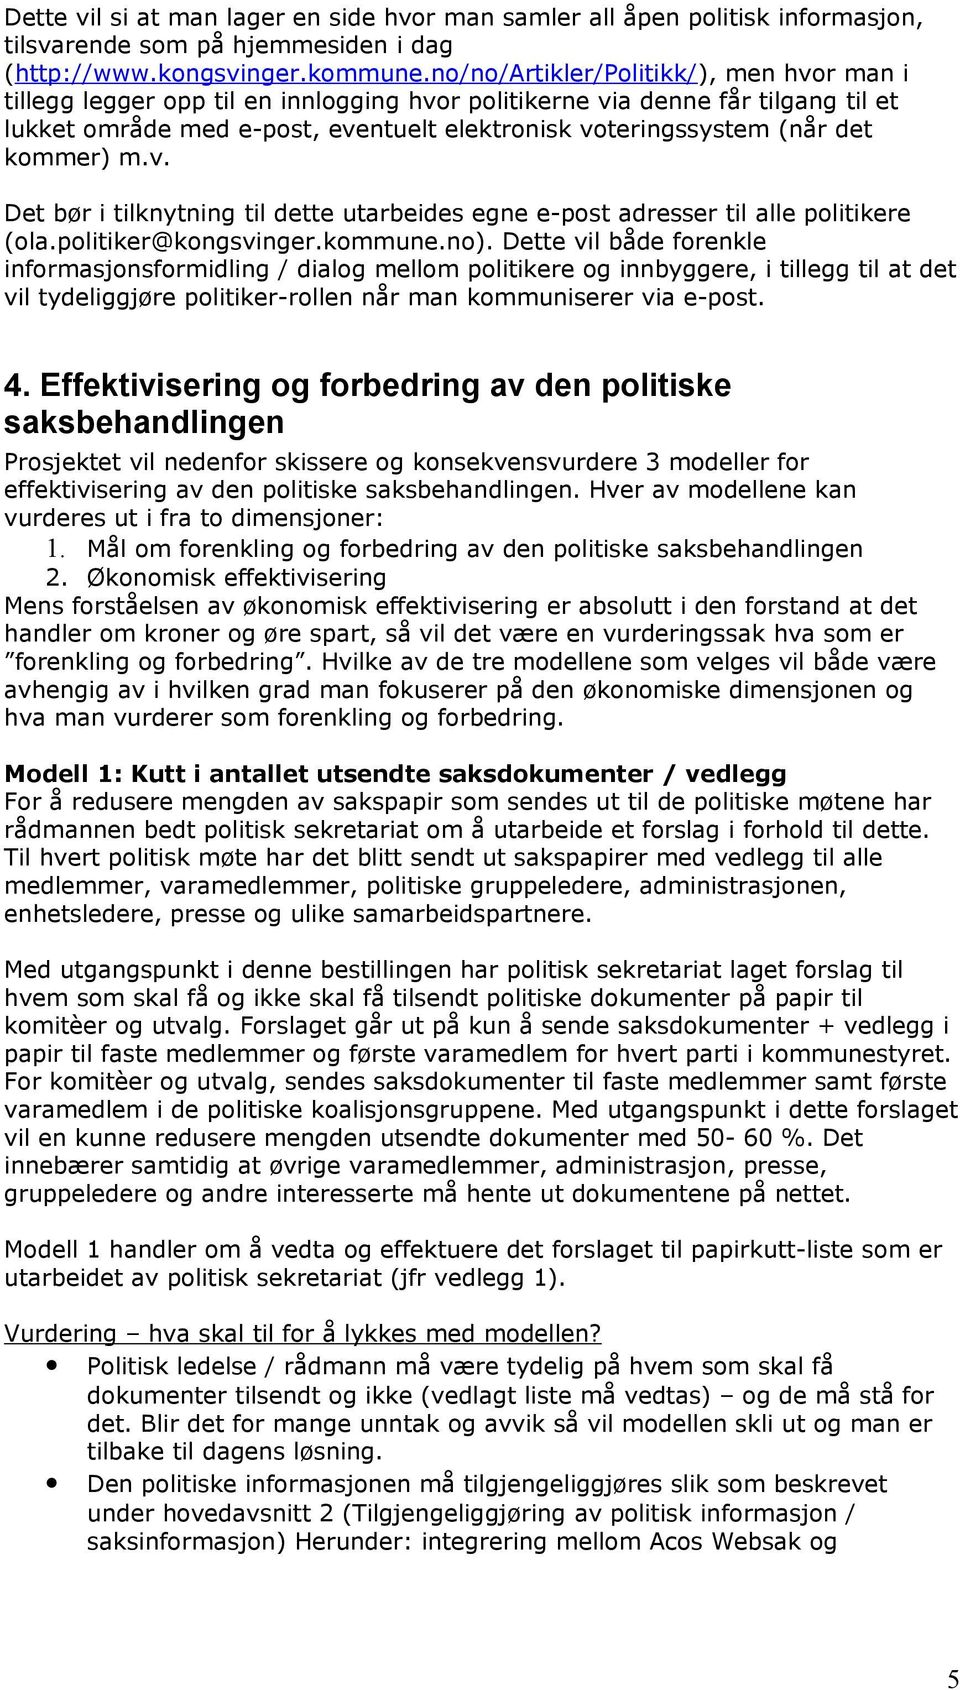 kommer) m.v. Det bør i tilknytning til dette utarbeides egne e-post adresser til alle politikere (ola.politiker@kongsvinger.kommune.no).